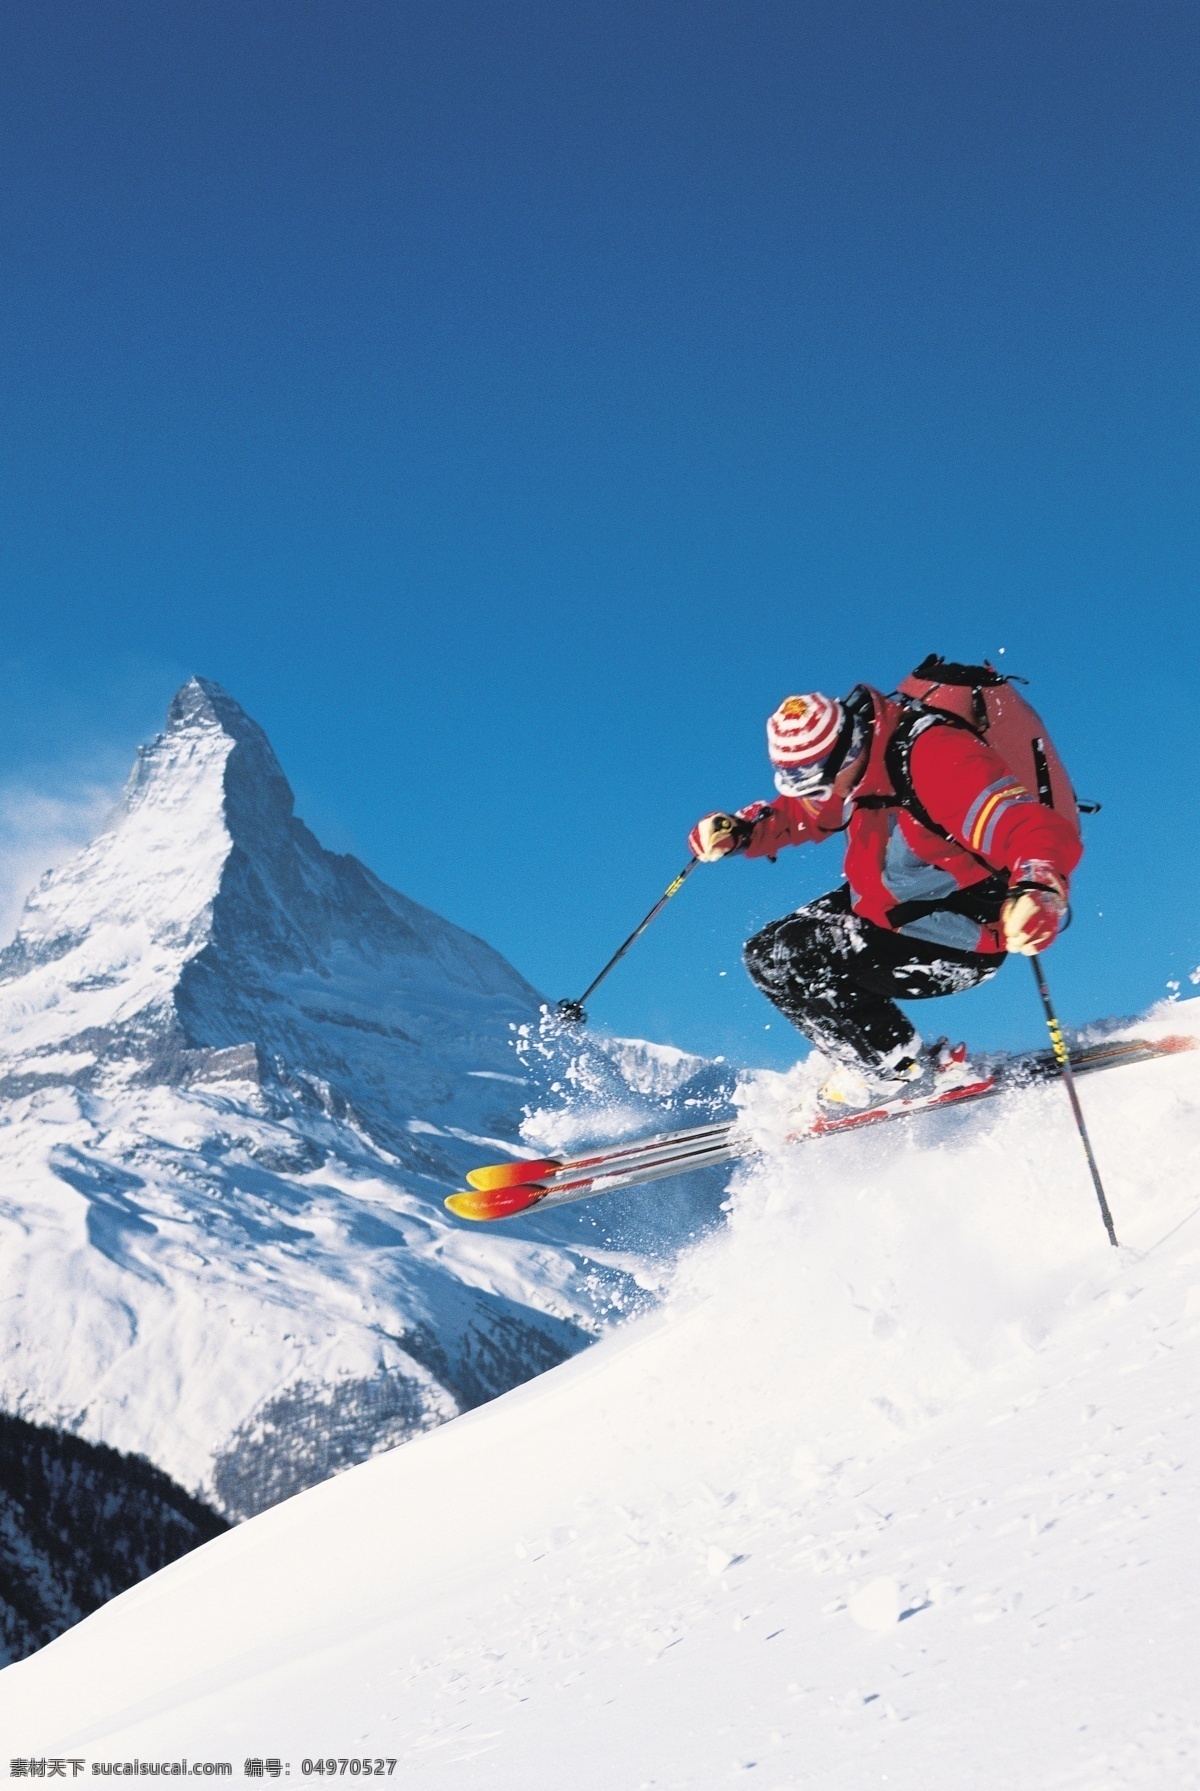 急速 下滑 滑雪 运动员 冬天 雪地运动 划雪运动 极限运动 体育项目 速度 运动图片 生活百科 雪山 美丽 雪景 风景 摄影图片 高清图片 滑雪图片